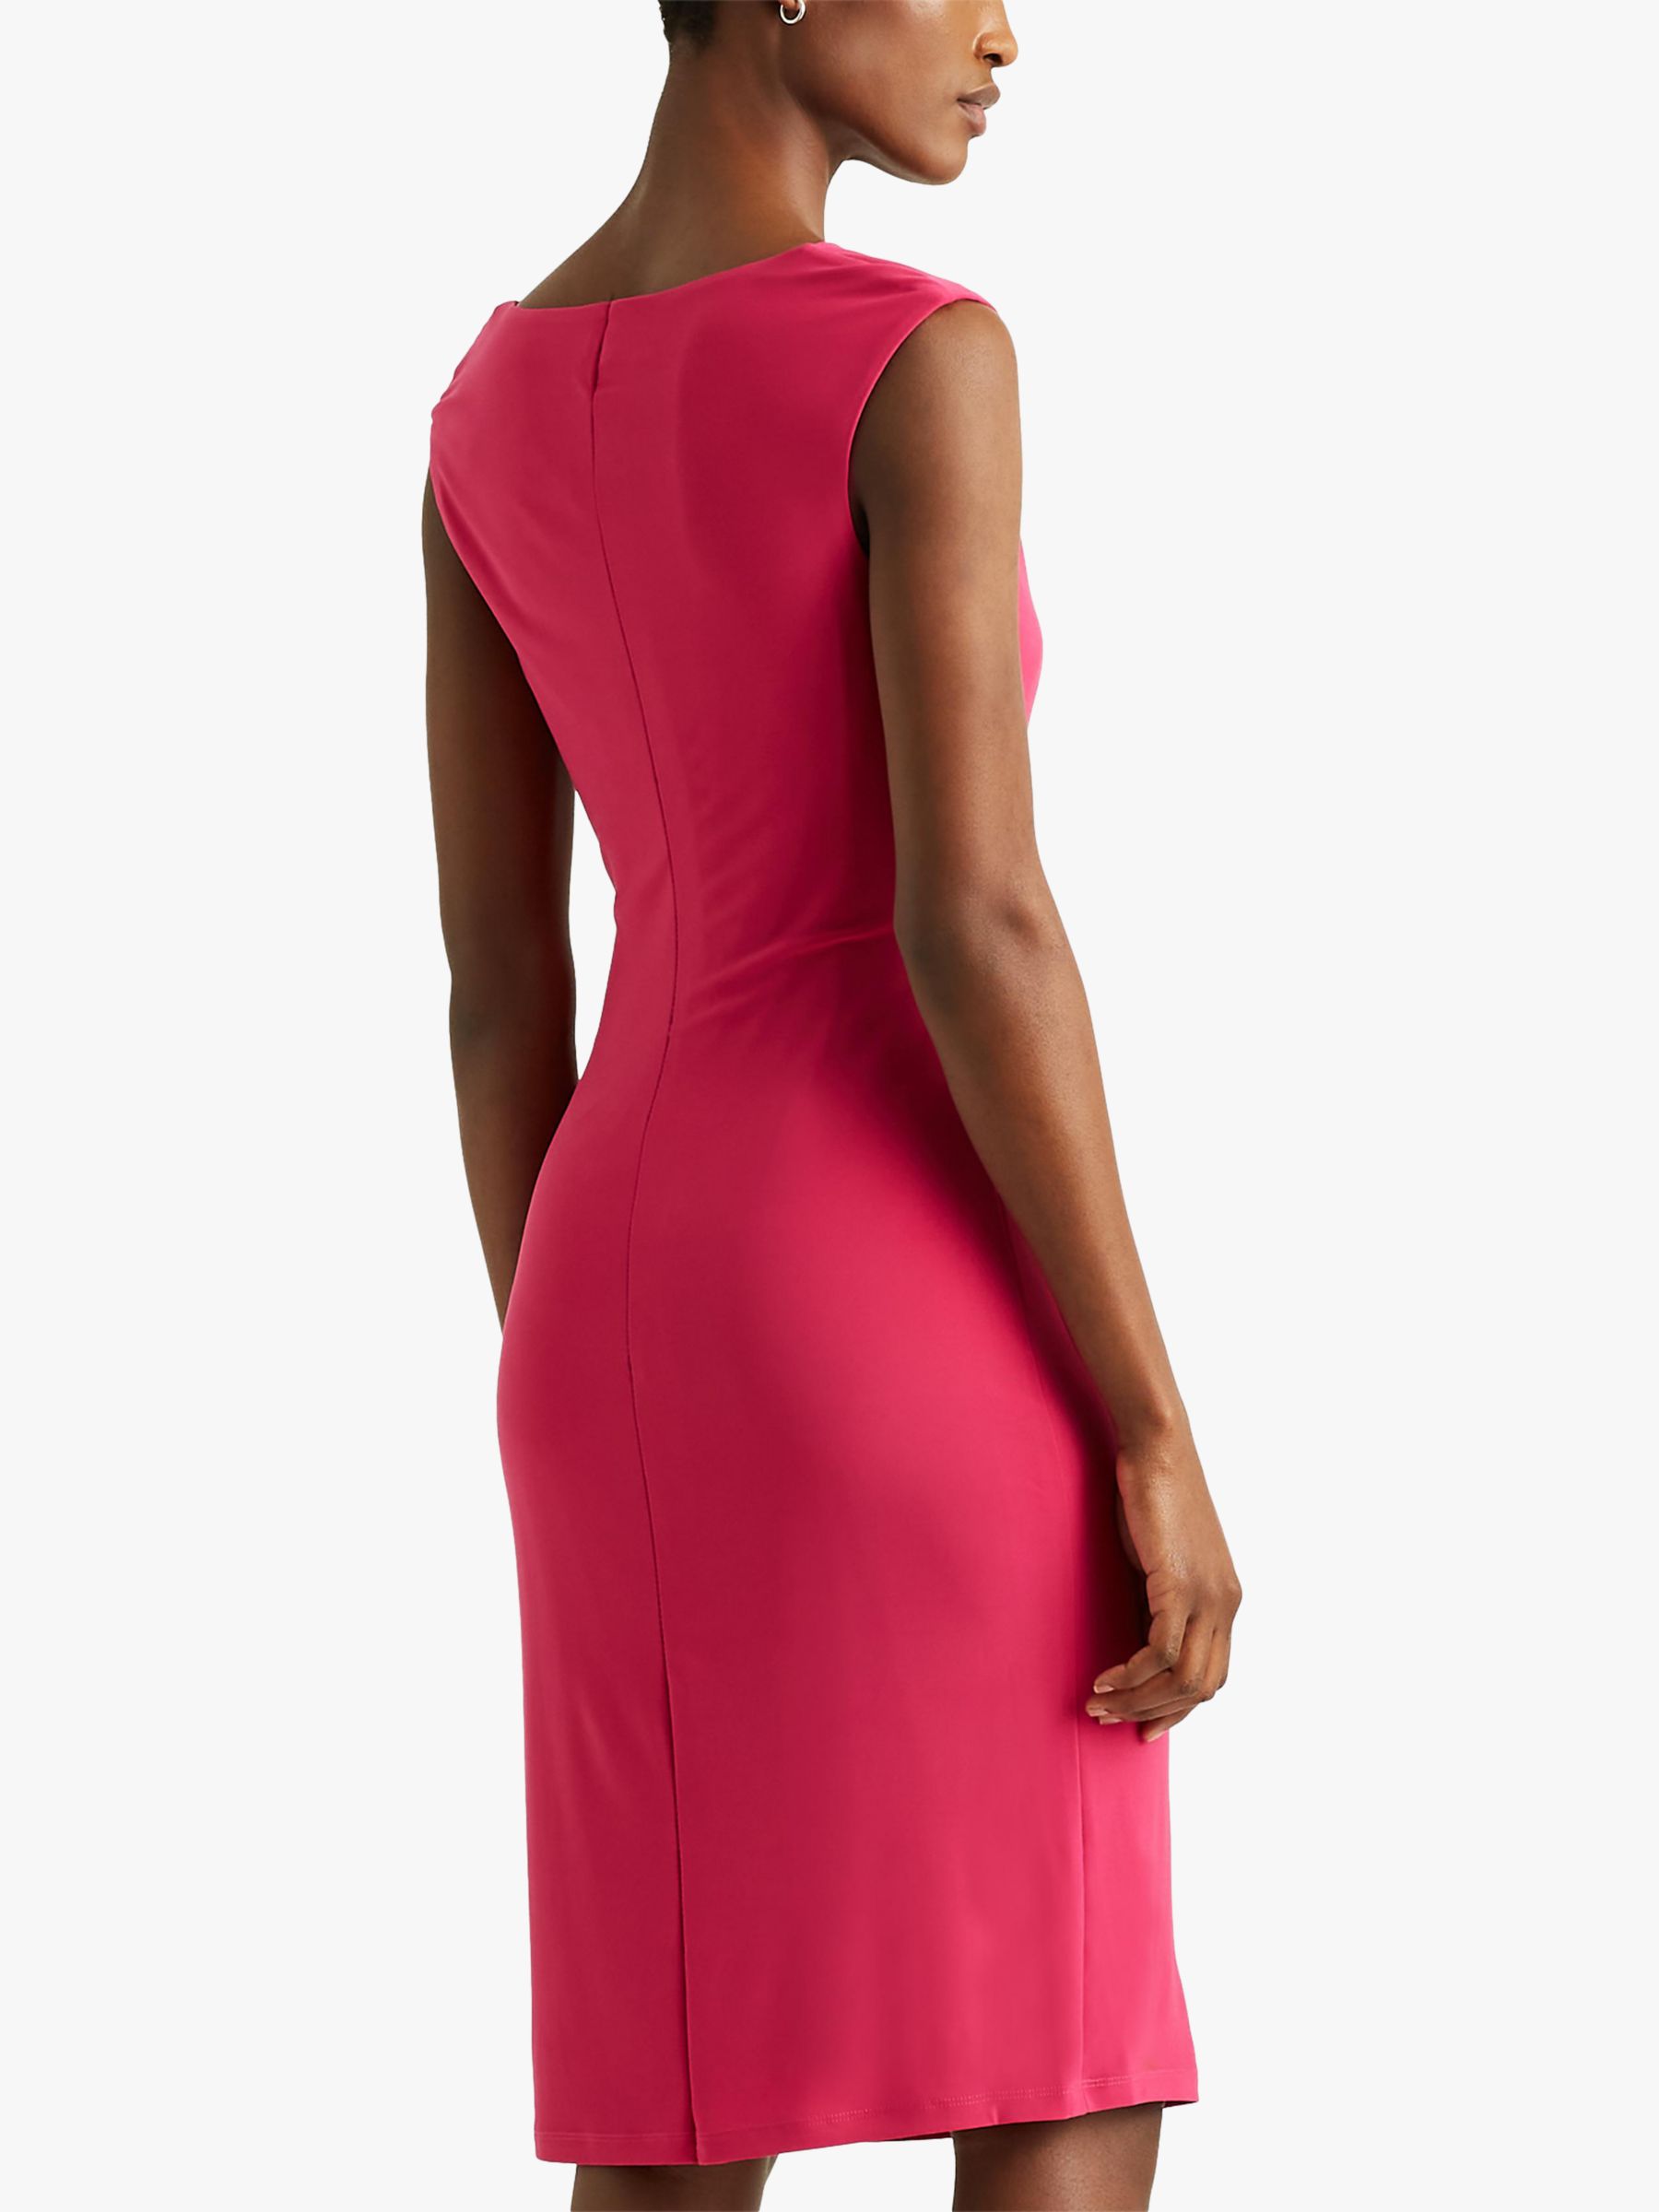 Lauren Ralph Lauren Varella Cap Sleeve Knee Length Dress, Pink